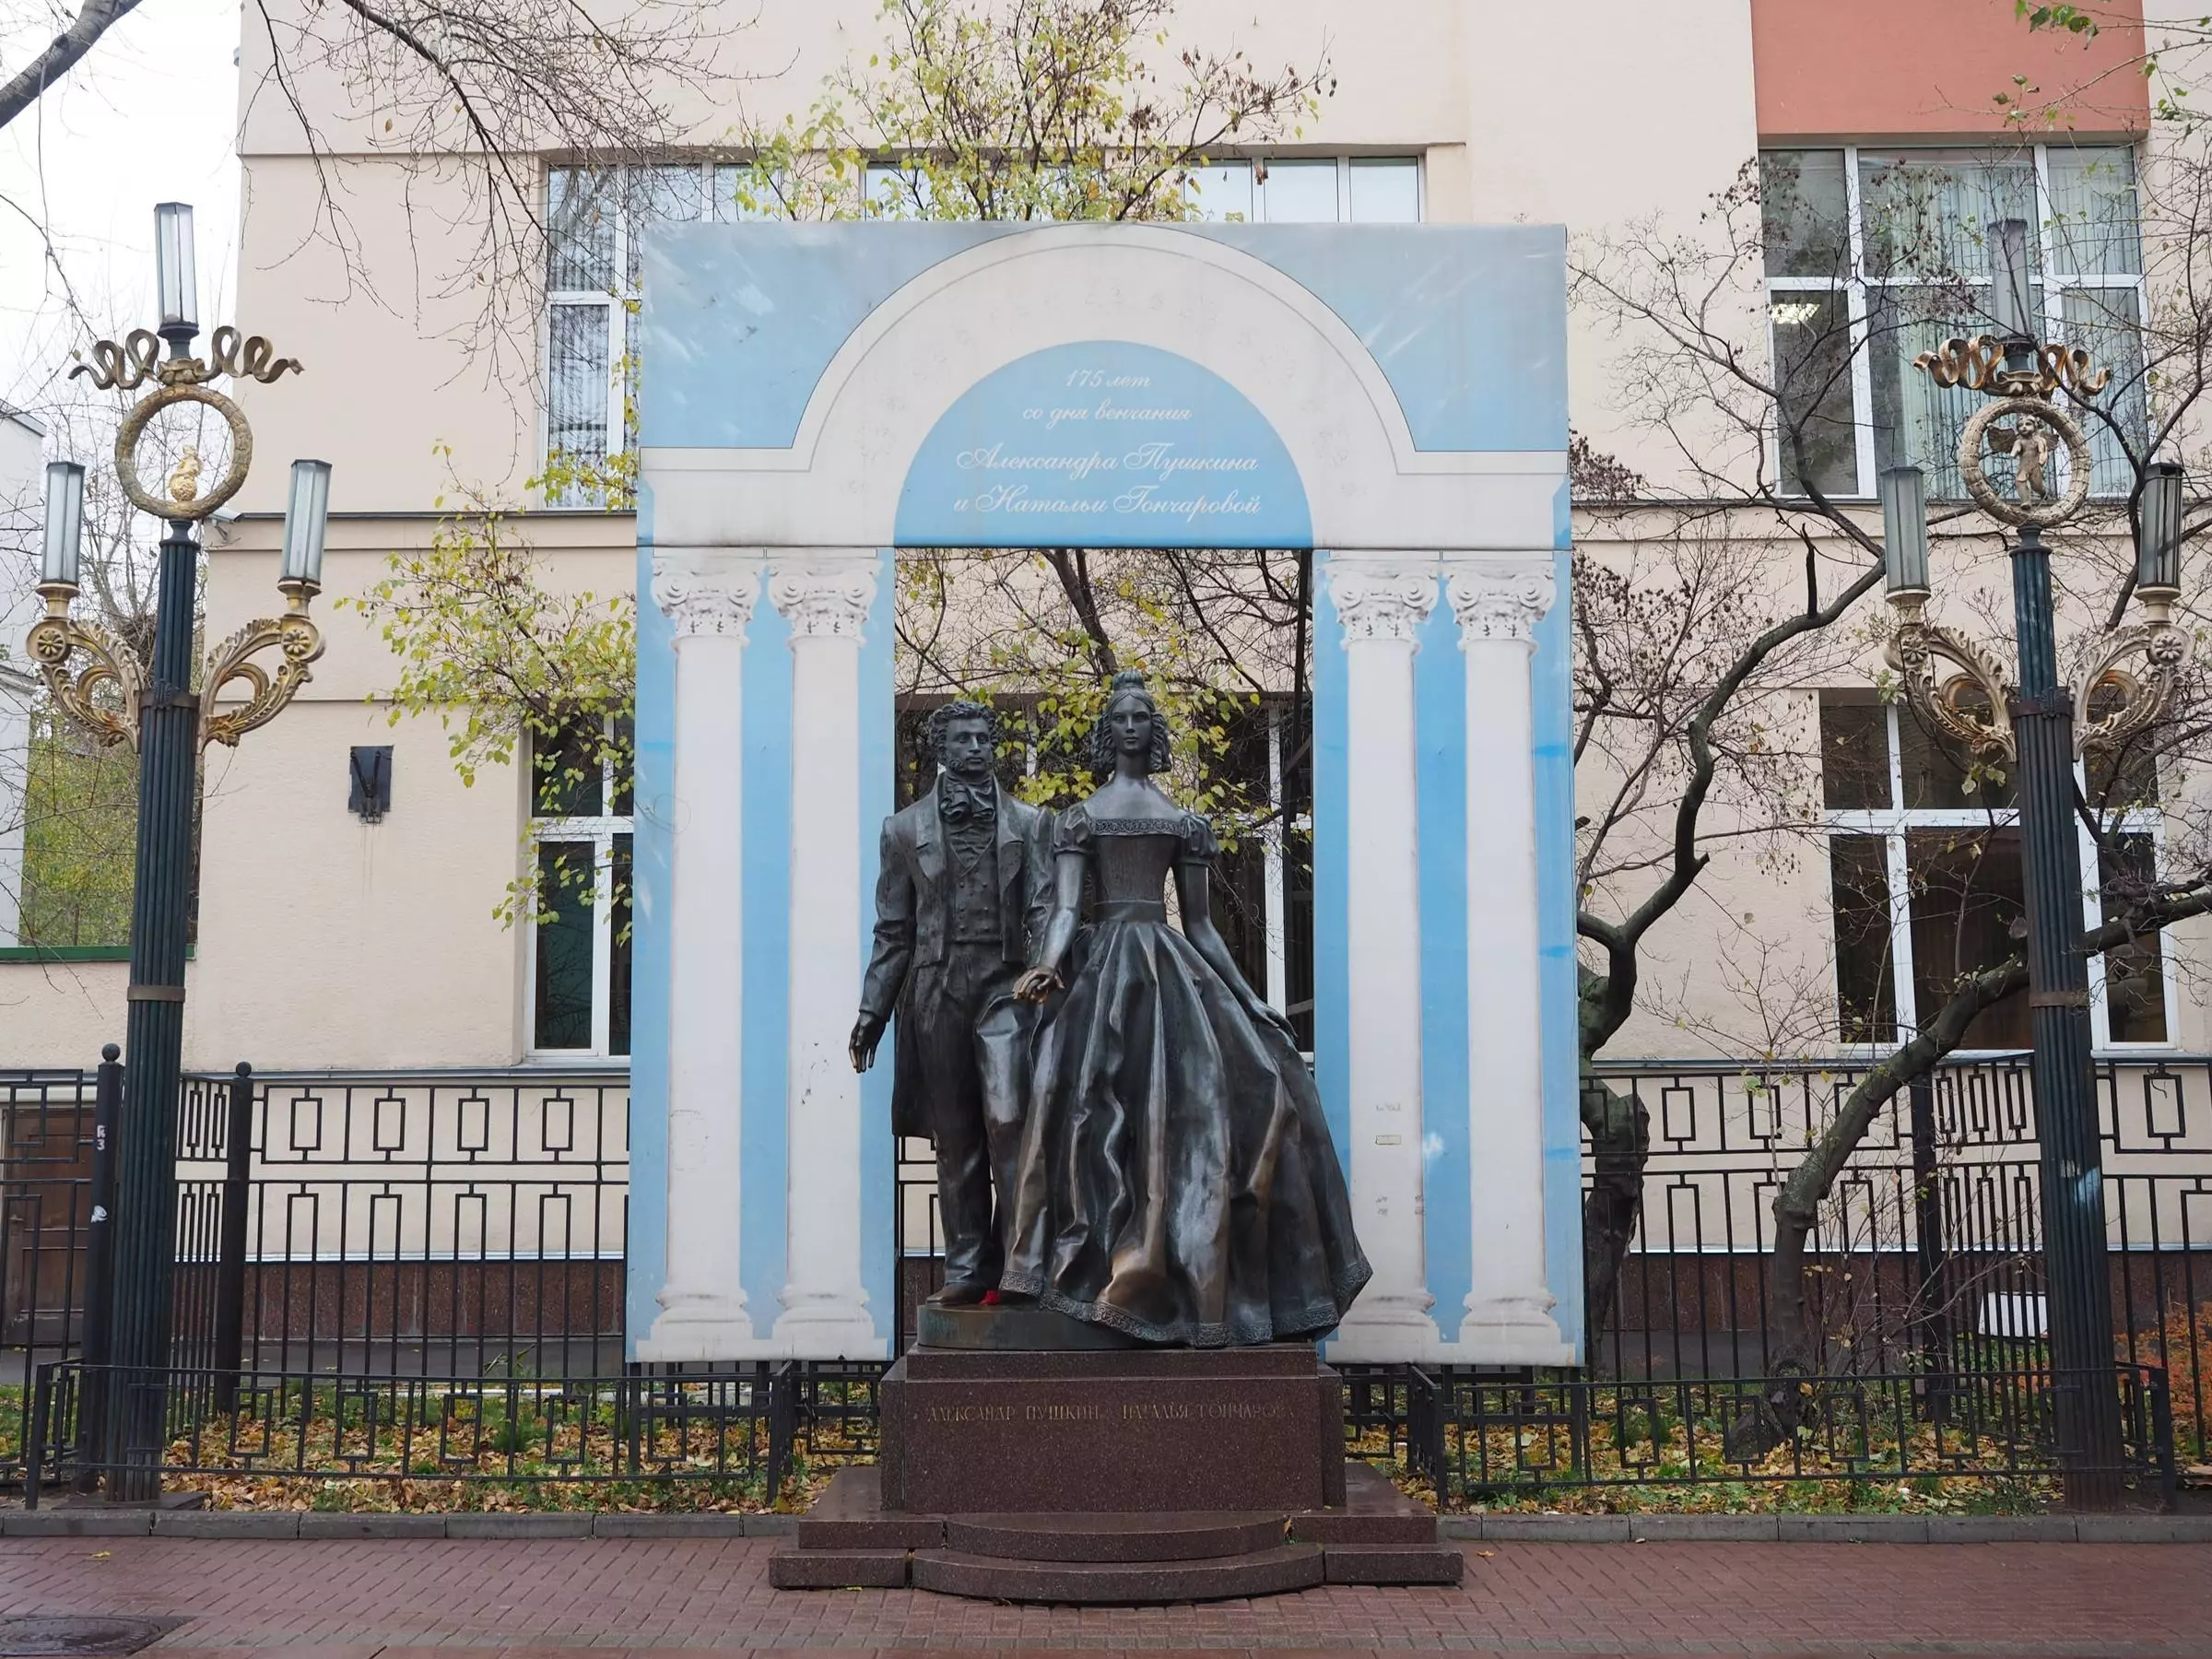 Музей-квартира пушкина 2019 ✮ старинные русские интерьеры